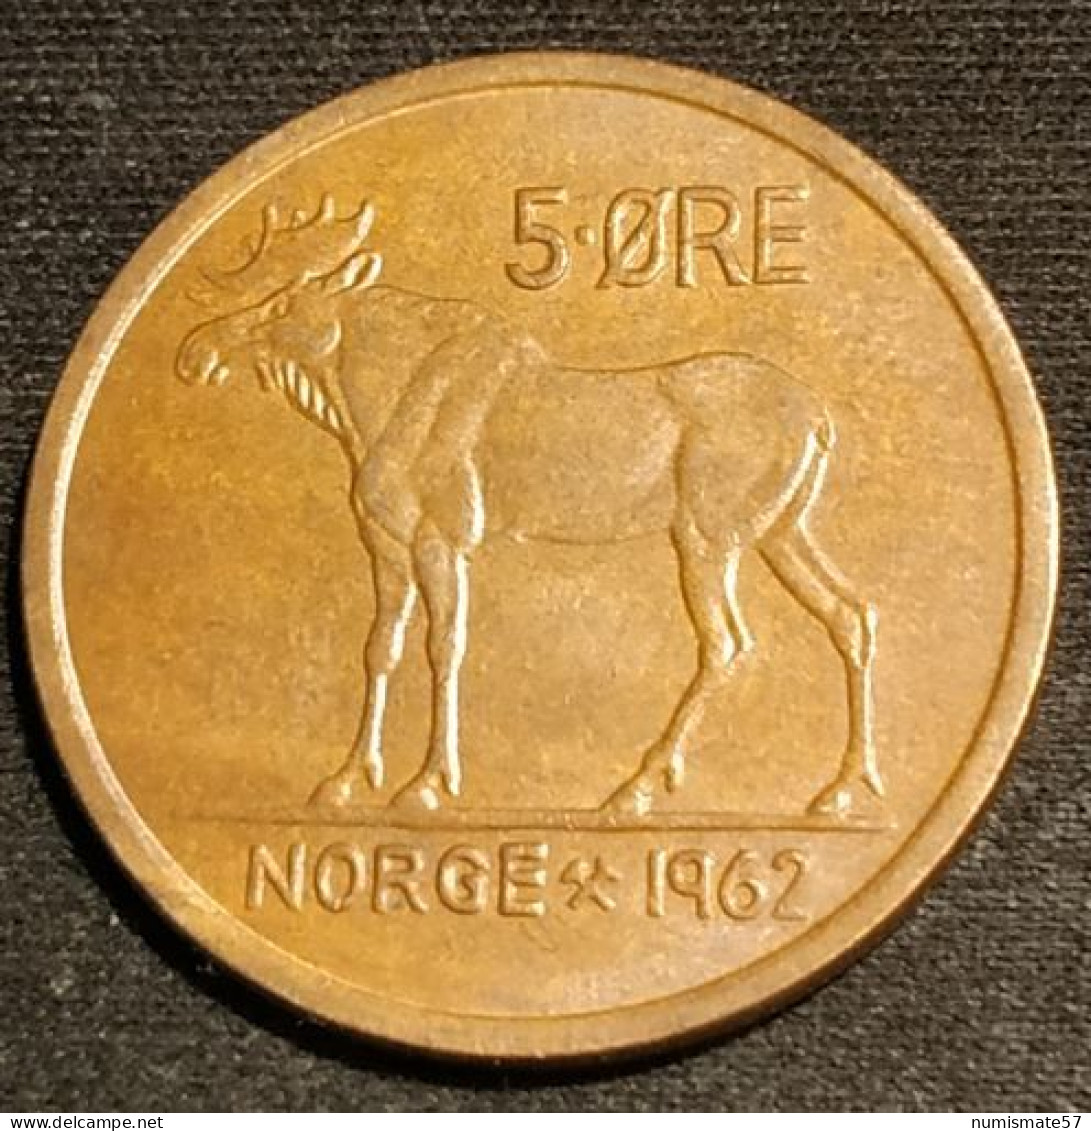 NORVEGE - NORWAY - 5 ORE 1962 - Olav V - élan - KM 405 - ( øre ) - Norway